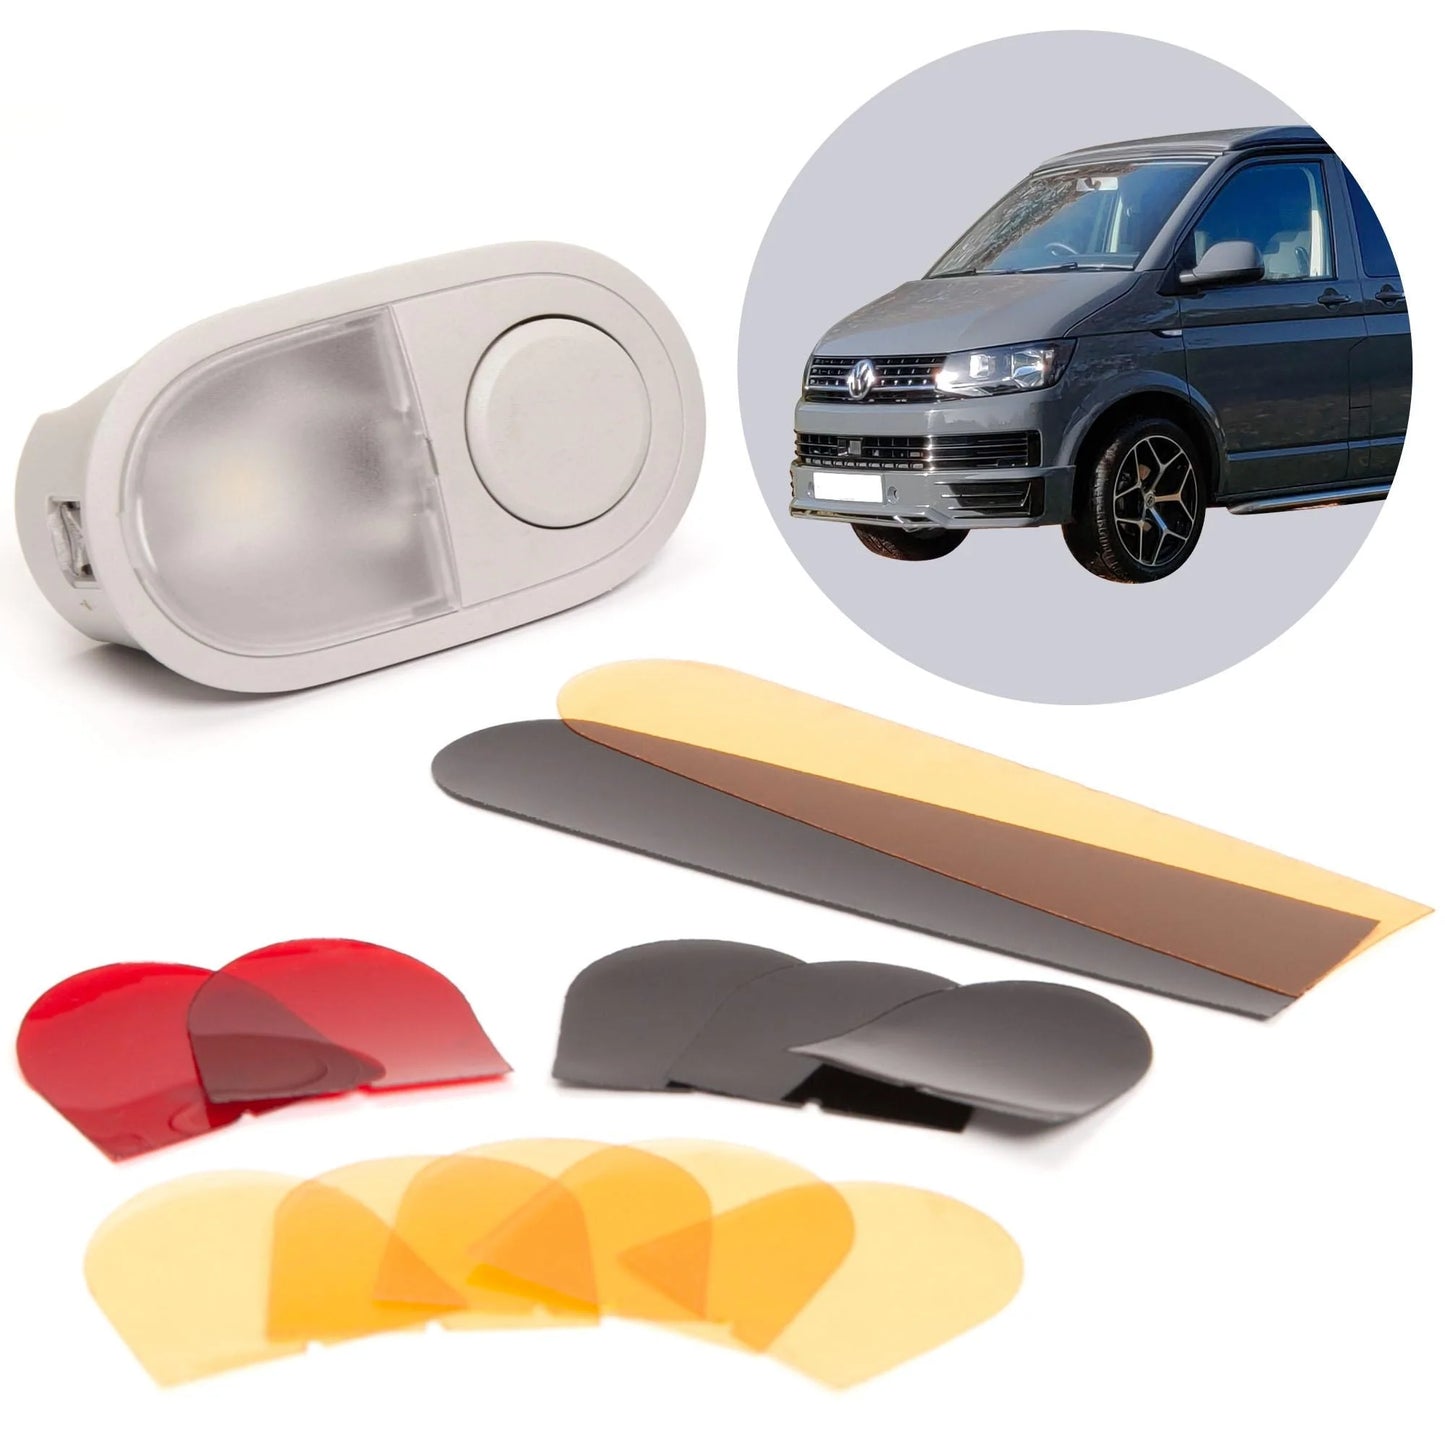 Farbfilter Set für LED Innenbeleuchtung kompatibel mit VW T6 / T5 / T6.1 auswechselbare Filterfolien für VW Leuchten im Fahrzeuginnenraum